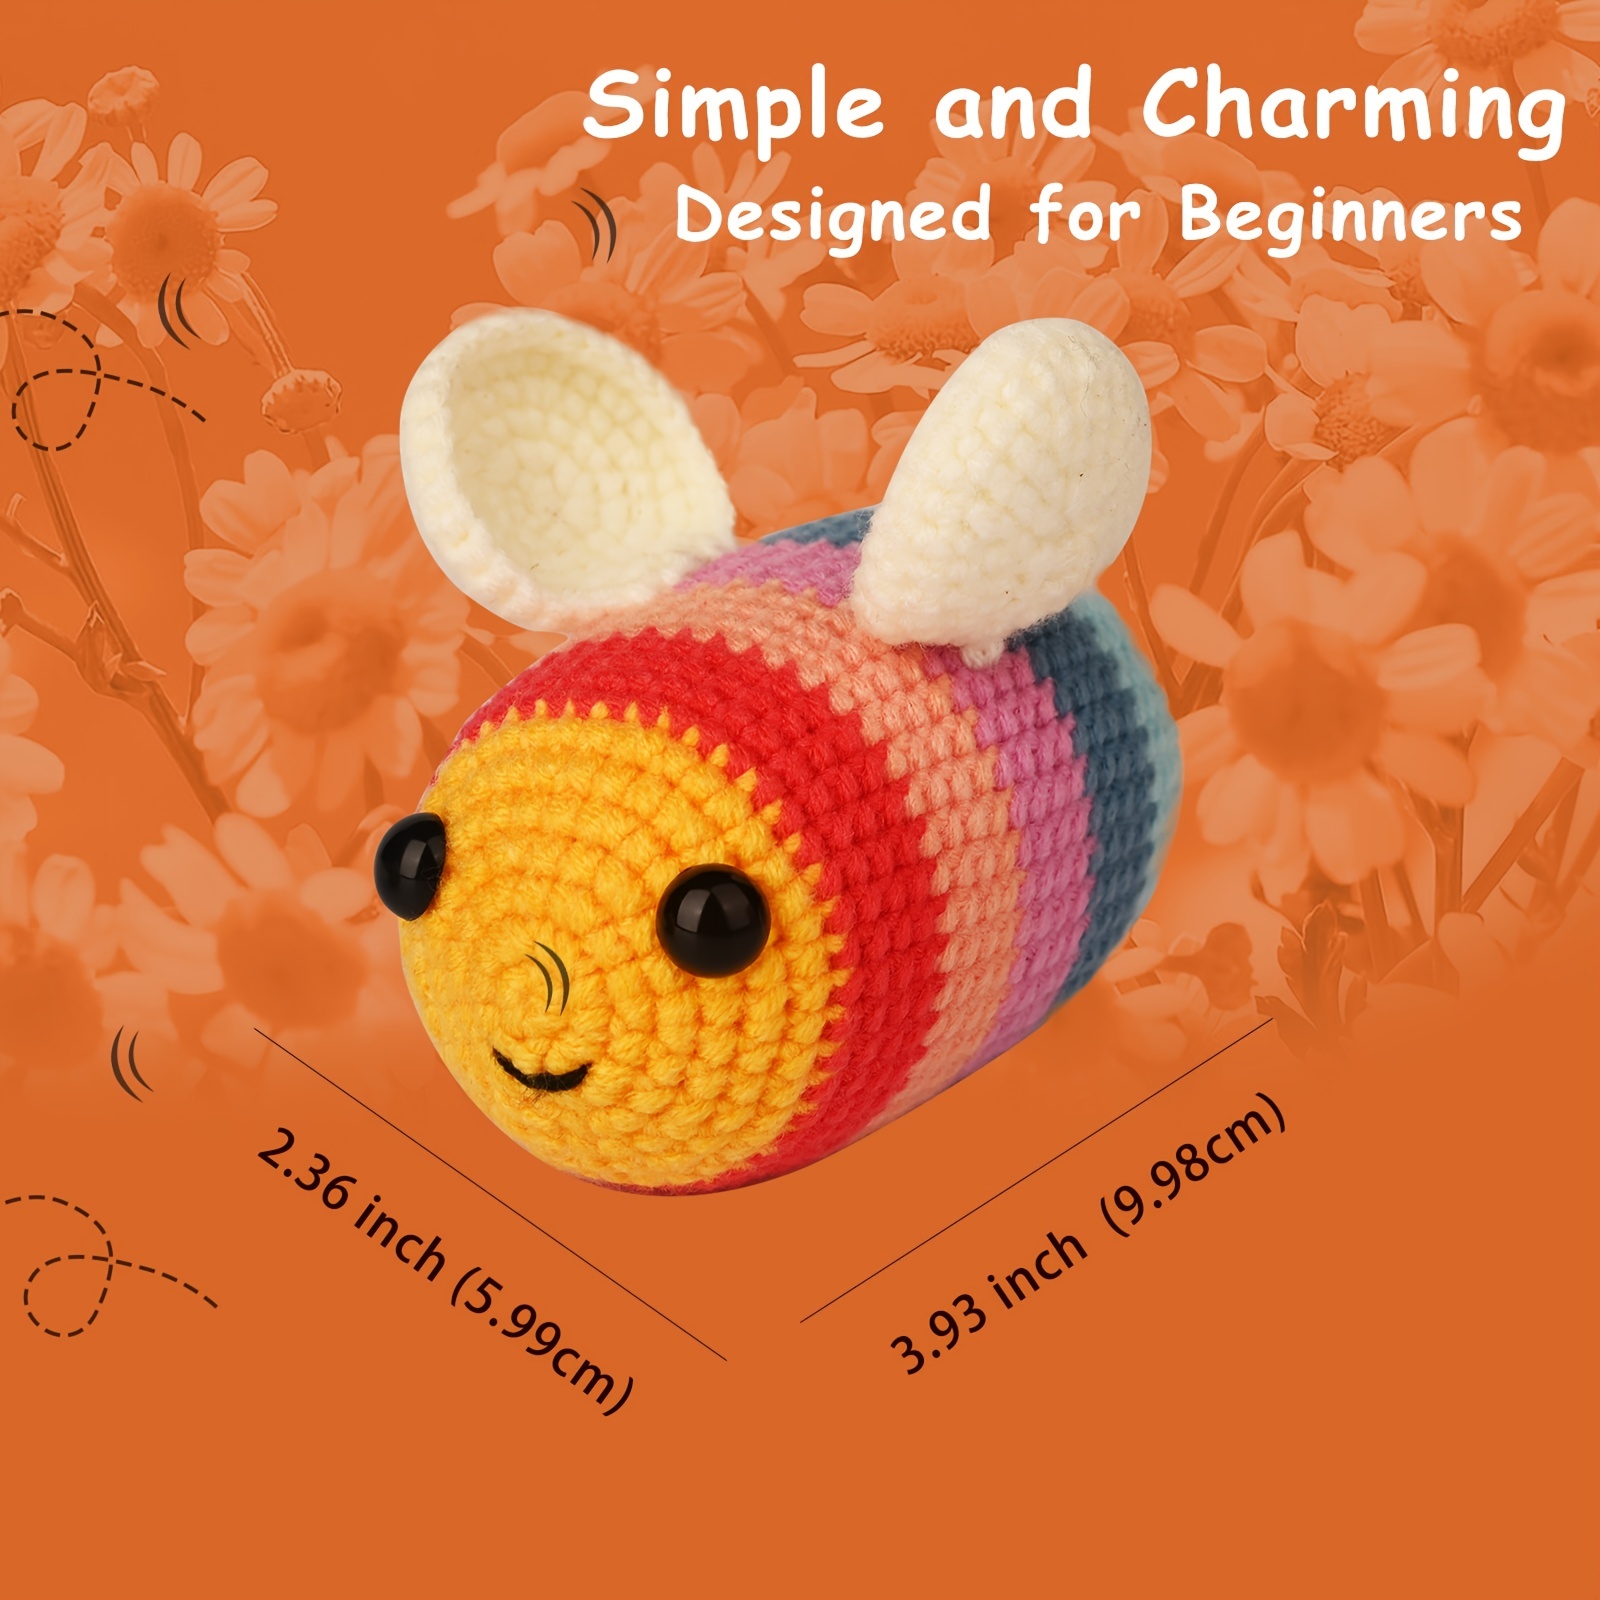 tsobrush turtle bee crochet kit for beginners - diy cute crocheting kit